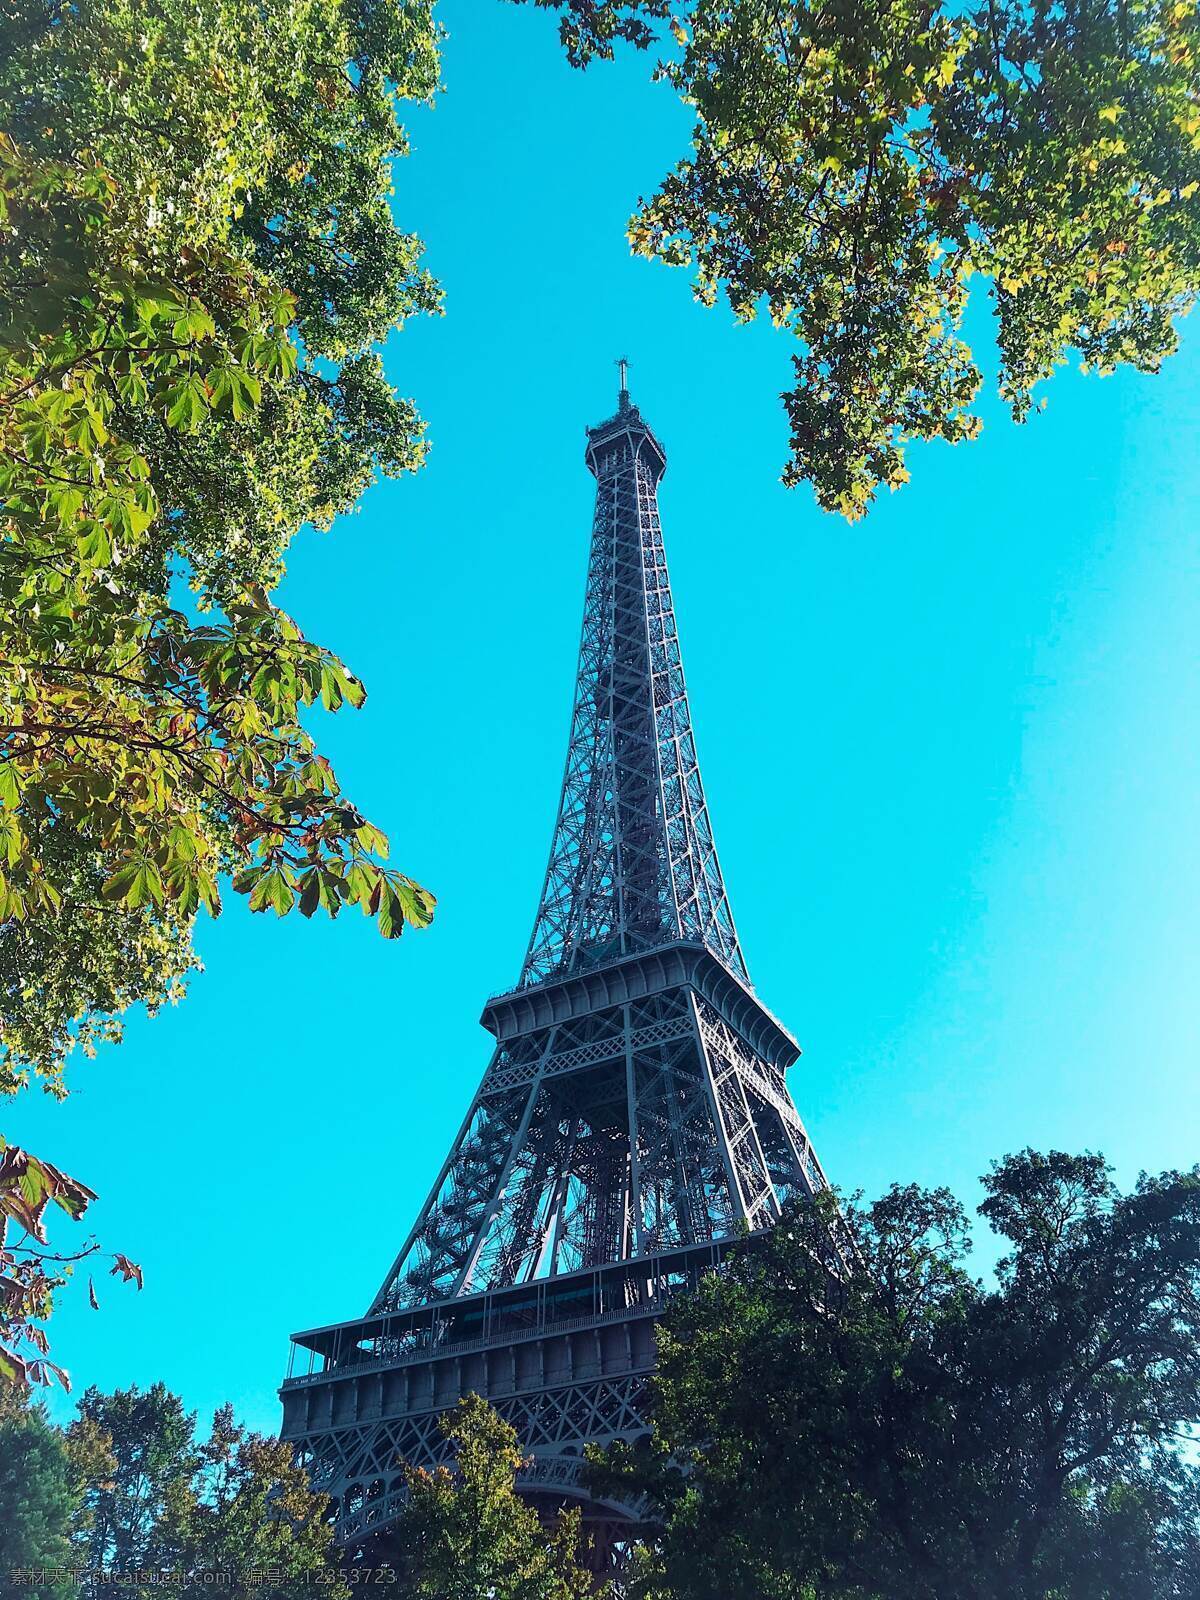 埃菲尔铁塔 埃菲尔 巴黎 法国巴黎 铁塔 巴黎铁塔 摄影图 未分类杂图 旅游摄影 国外旅游